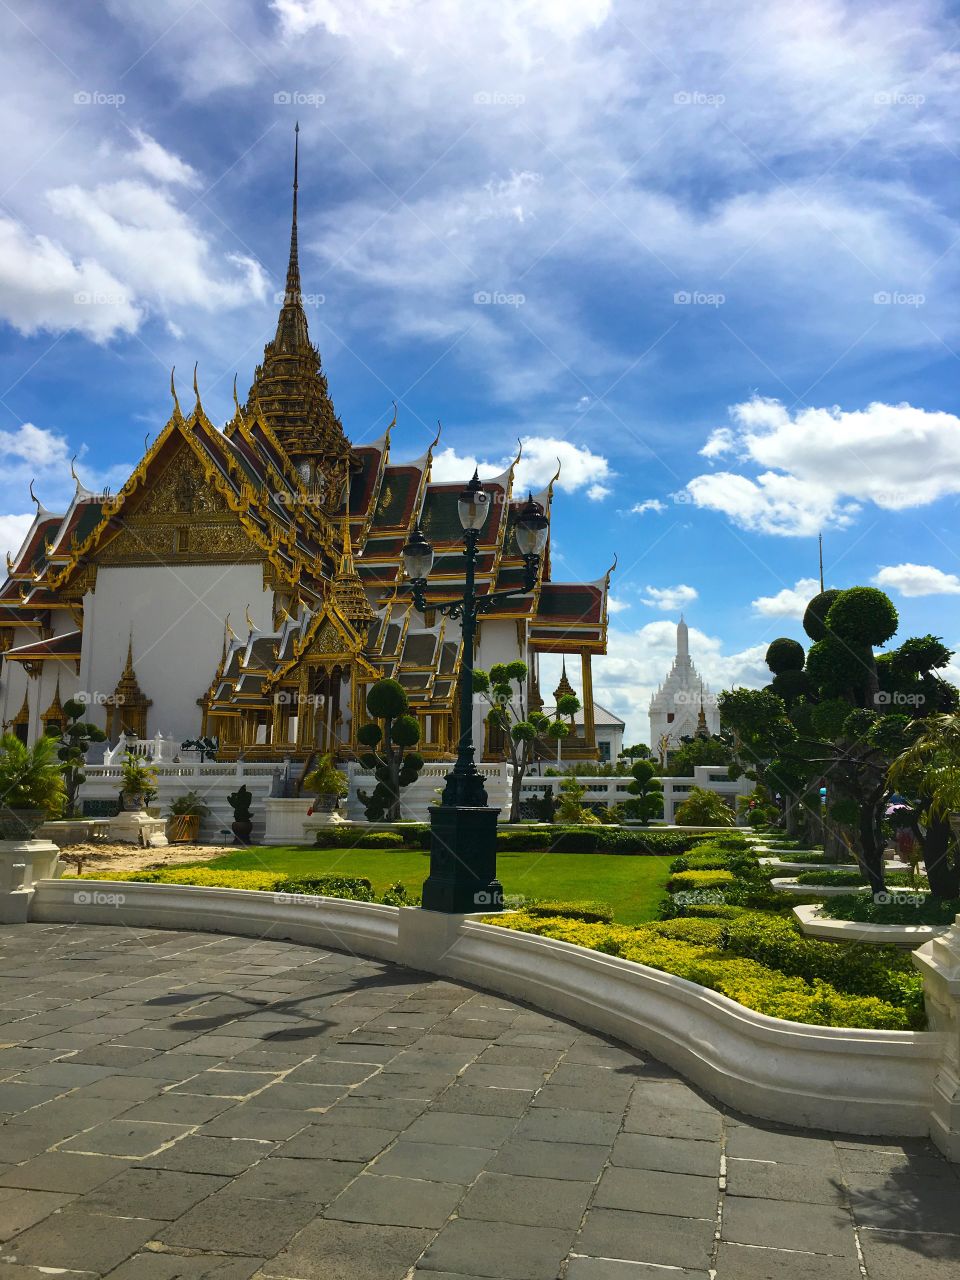 Grand Palace / Bangkok Thailand 86